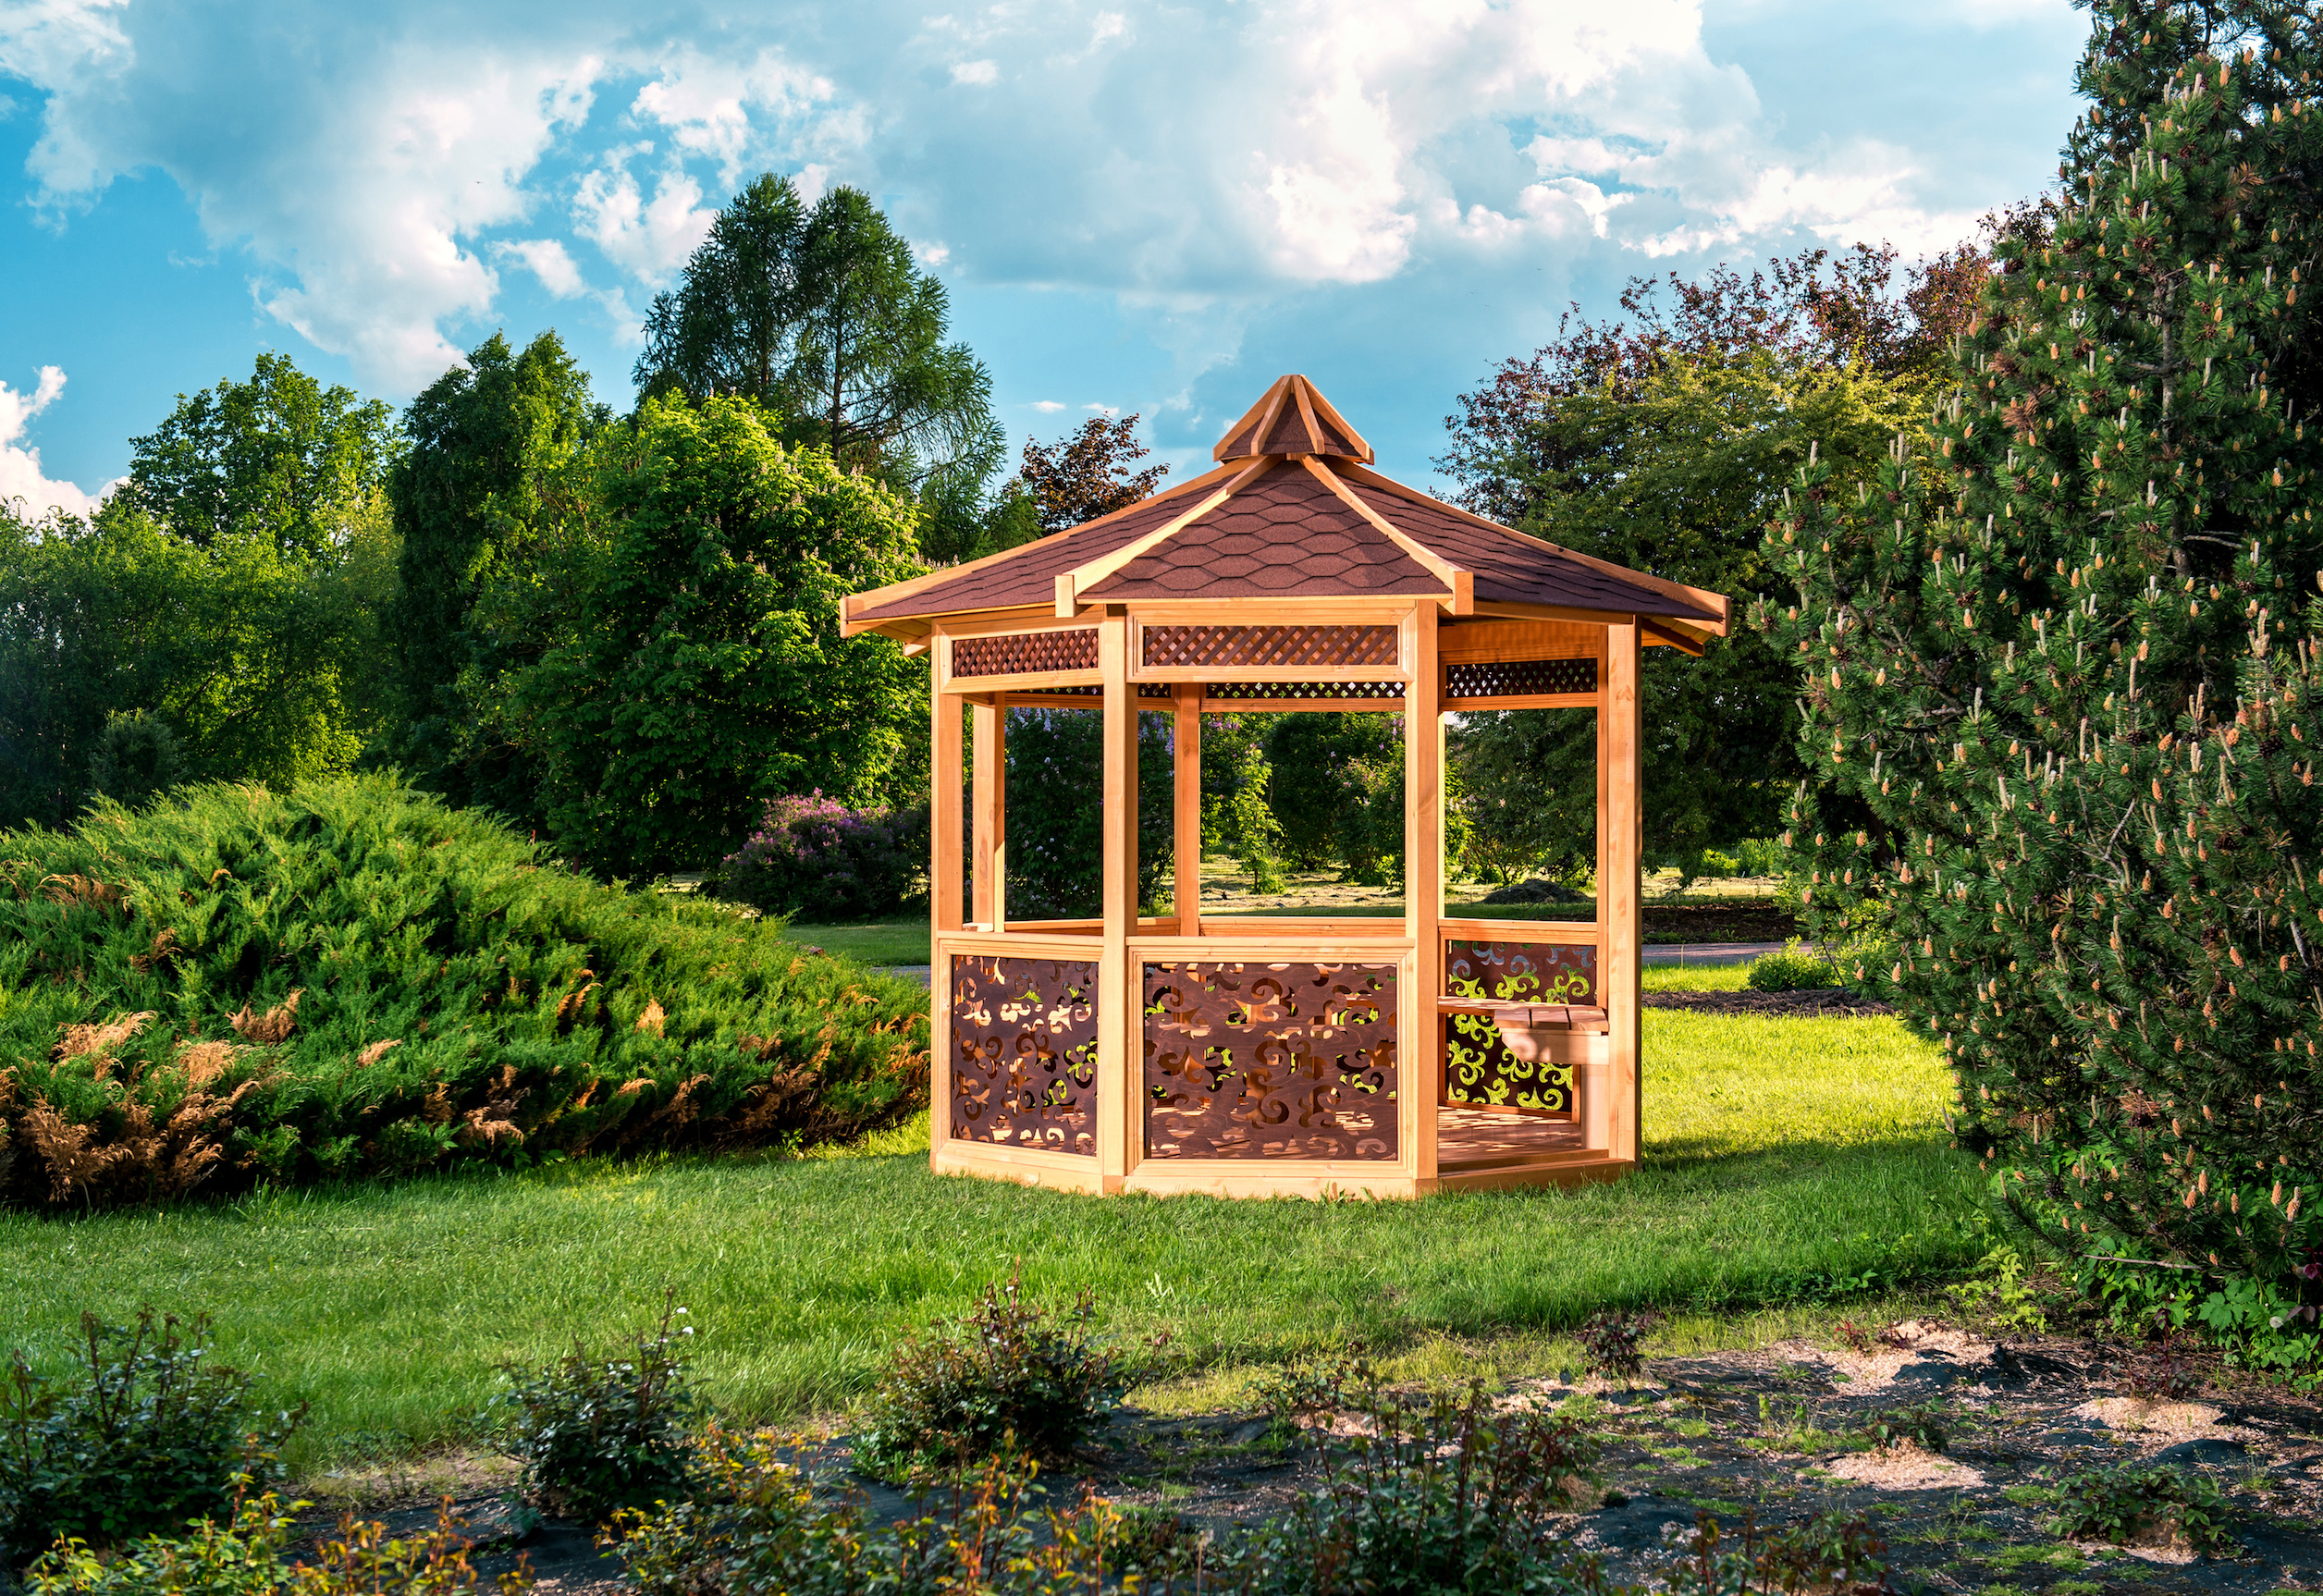 Véritable havre de paix, le gazebo vous permet de profiter d’une vue à 360° sur votre jardin. © Alex Tihonov, Adobe Stock